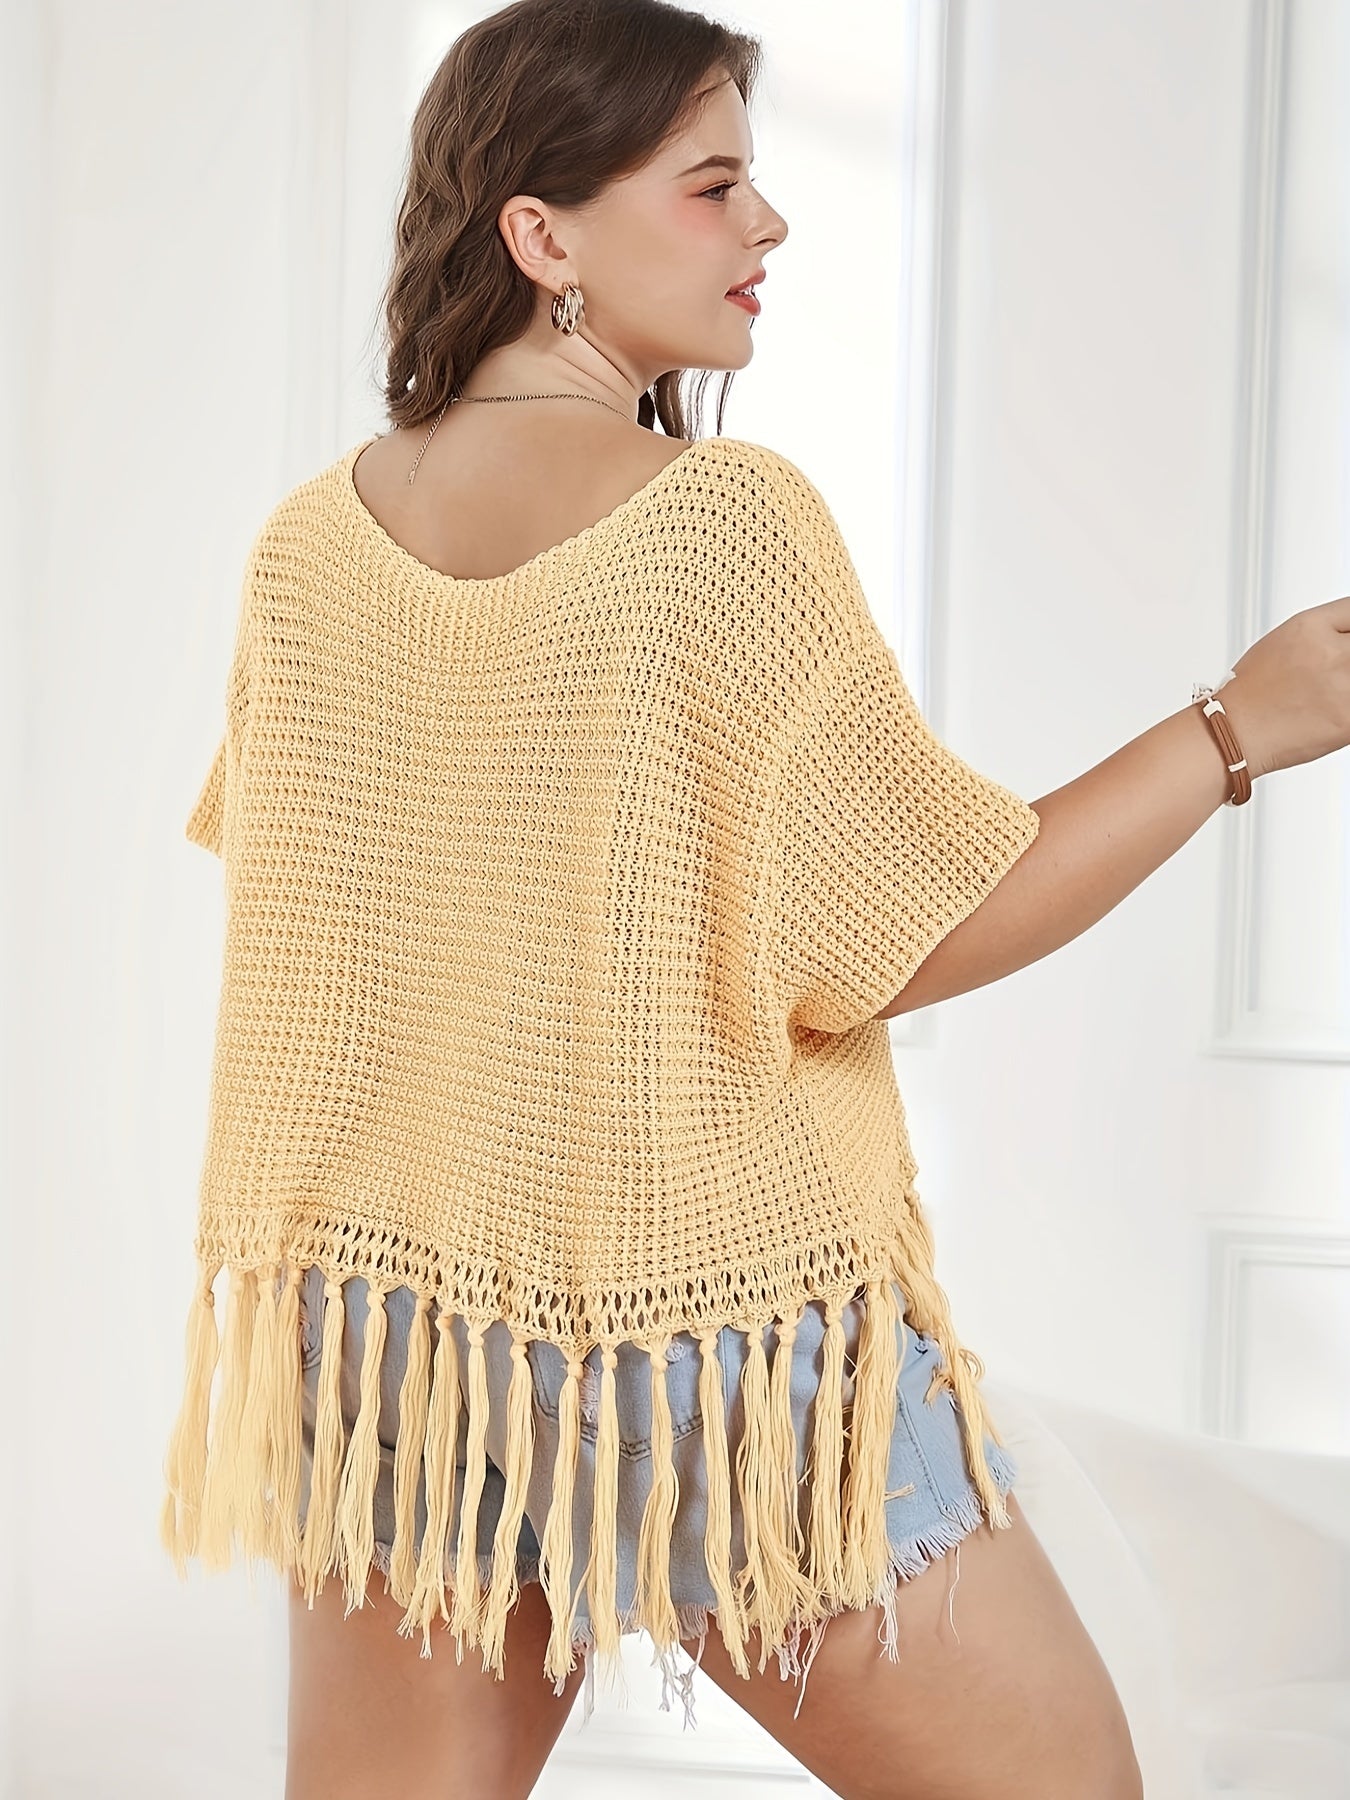 Antmvs Plus Size Vacay Sweater, Women's Plus Solid Waffle Crochet Tassel Trim Short Sleeve Crop Top